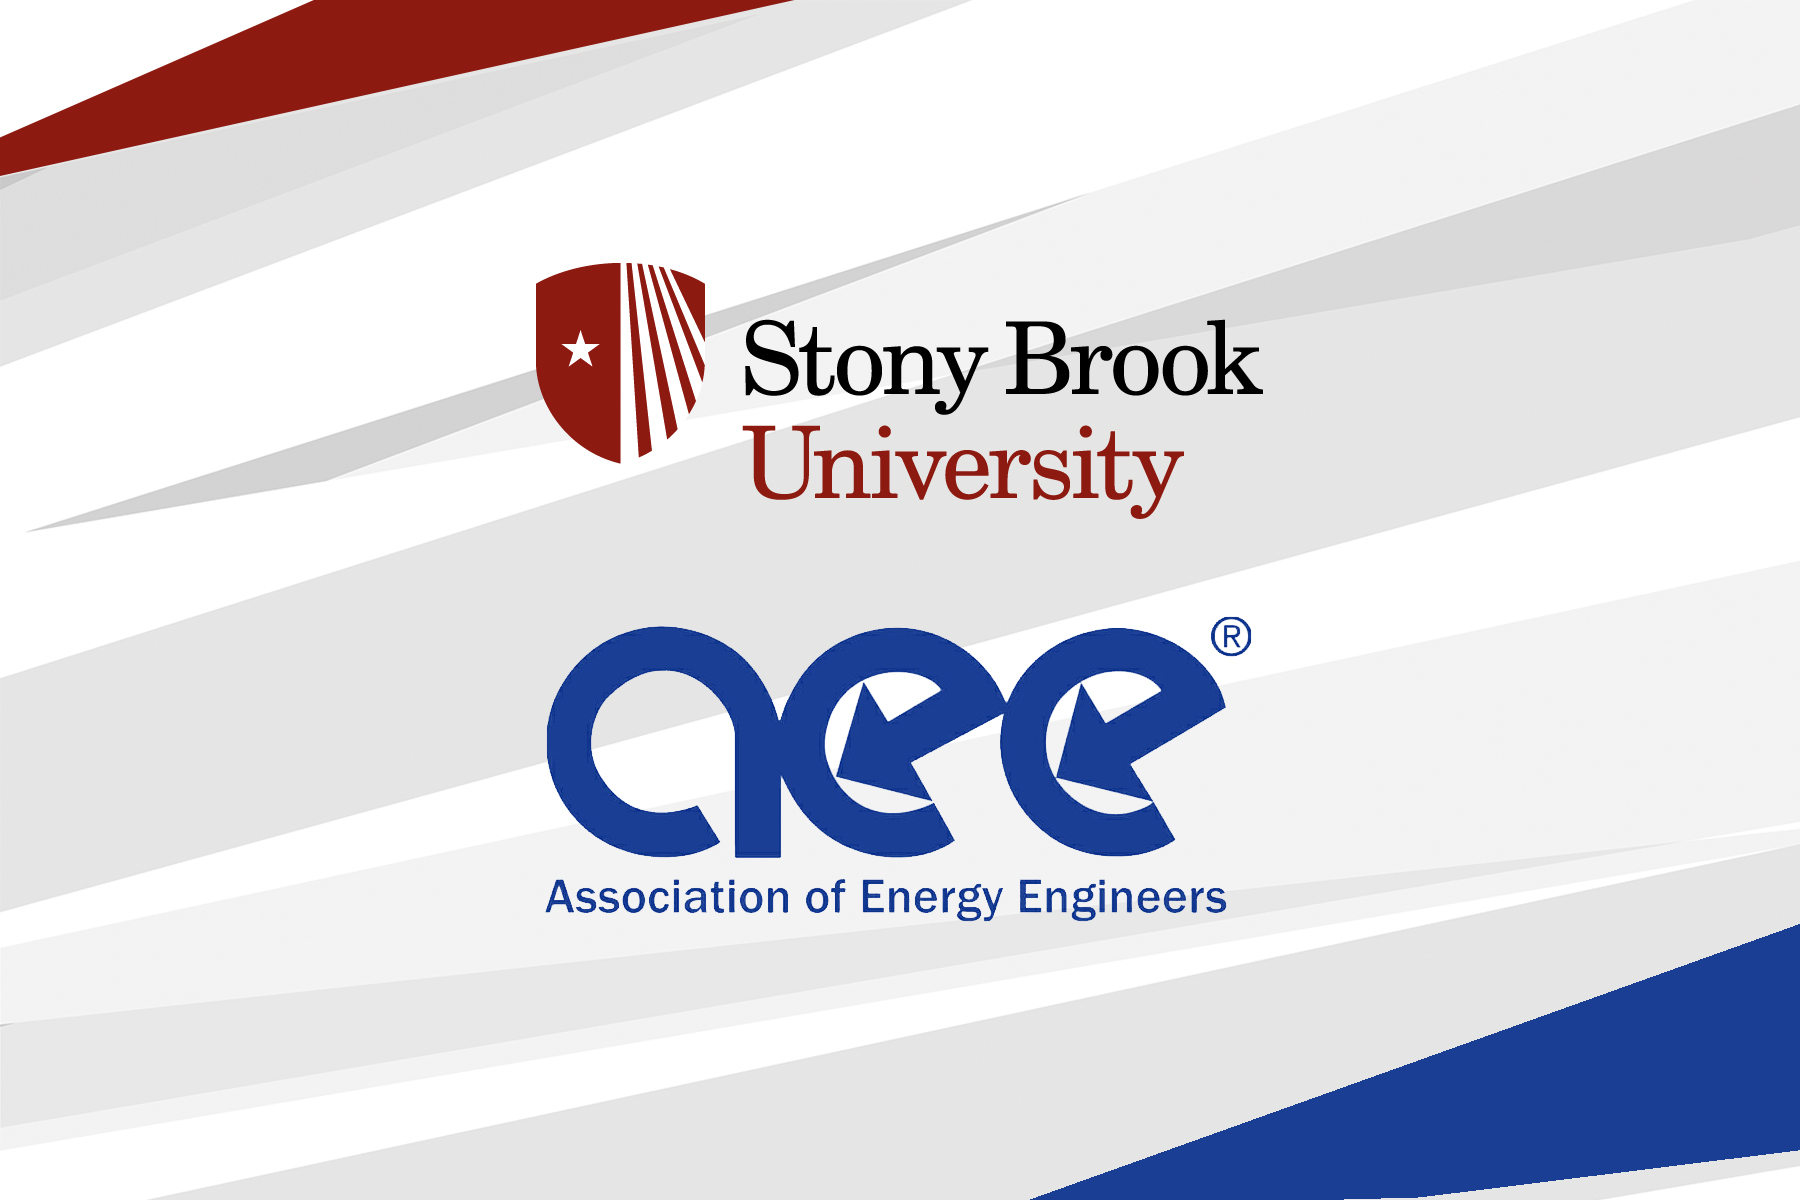 stony brook logo and aee logo